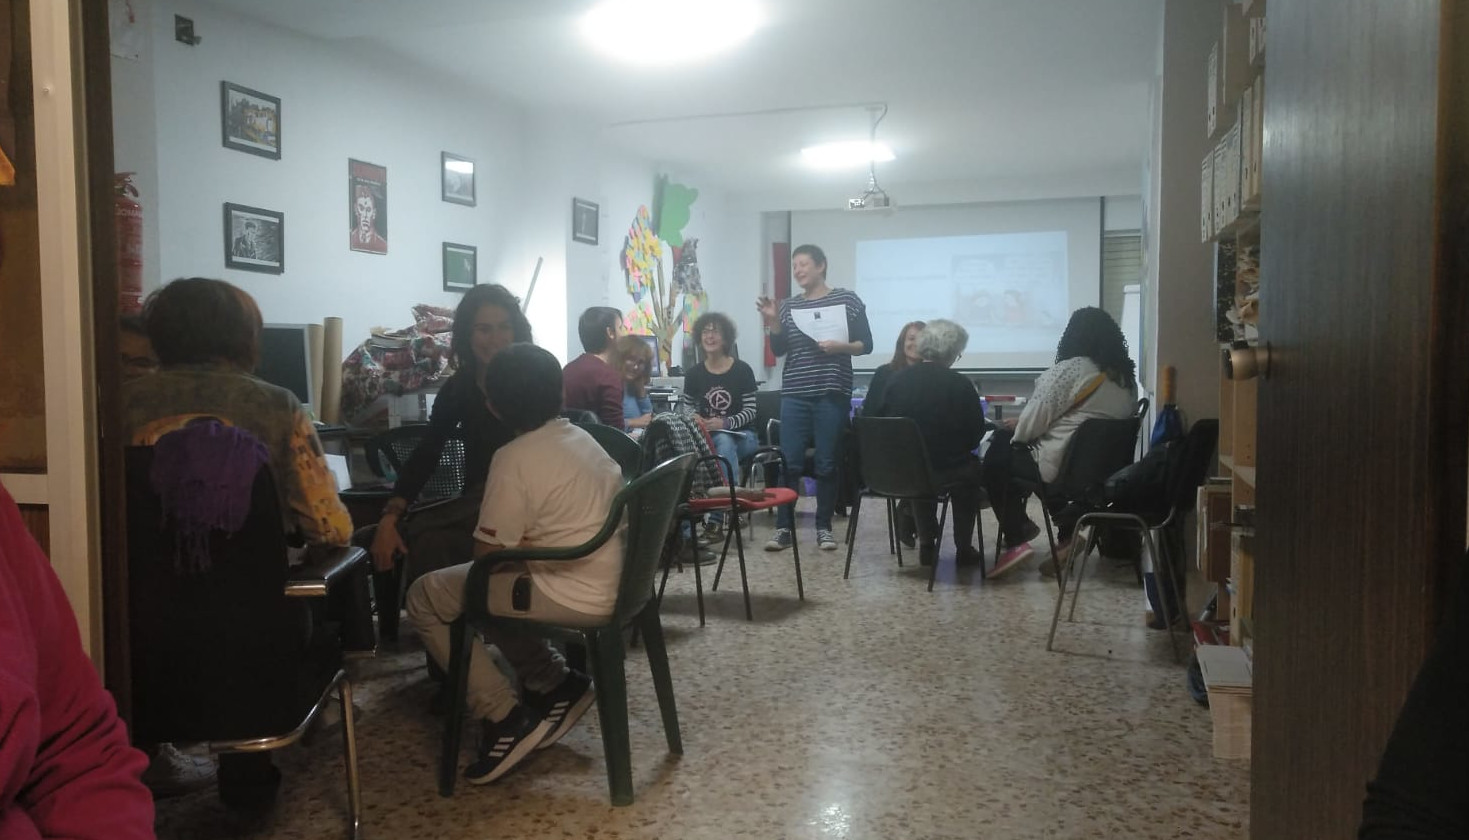 Dones lliures realitza un taller sobre conciliació i corresponsabilitat des del feminisme